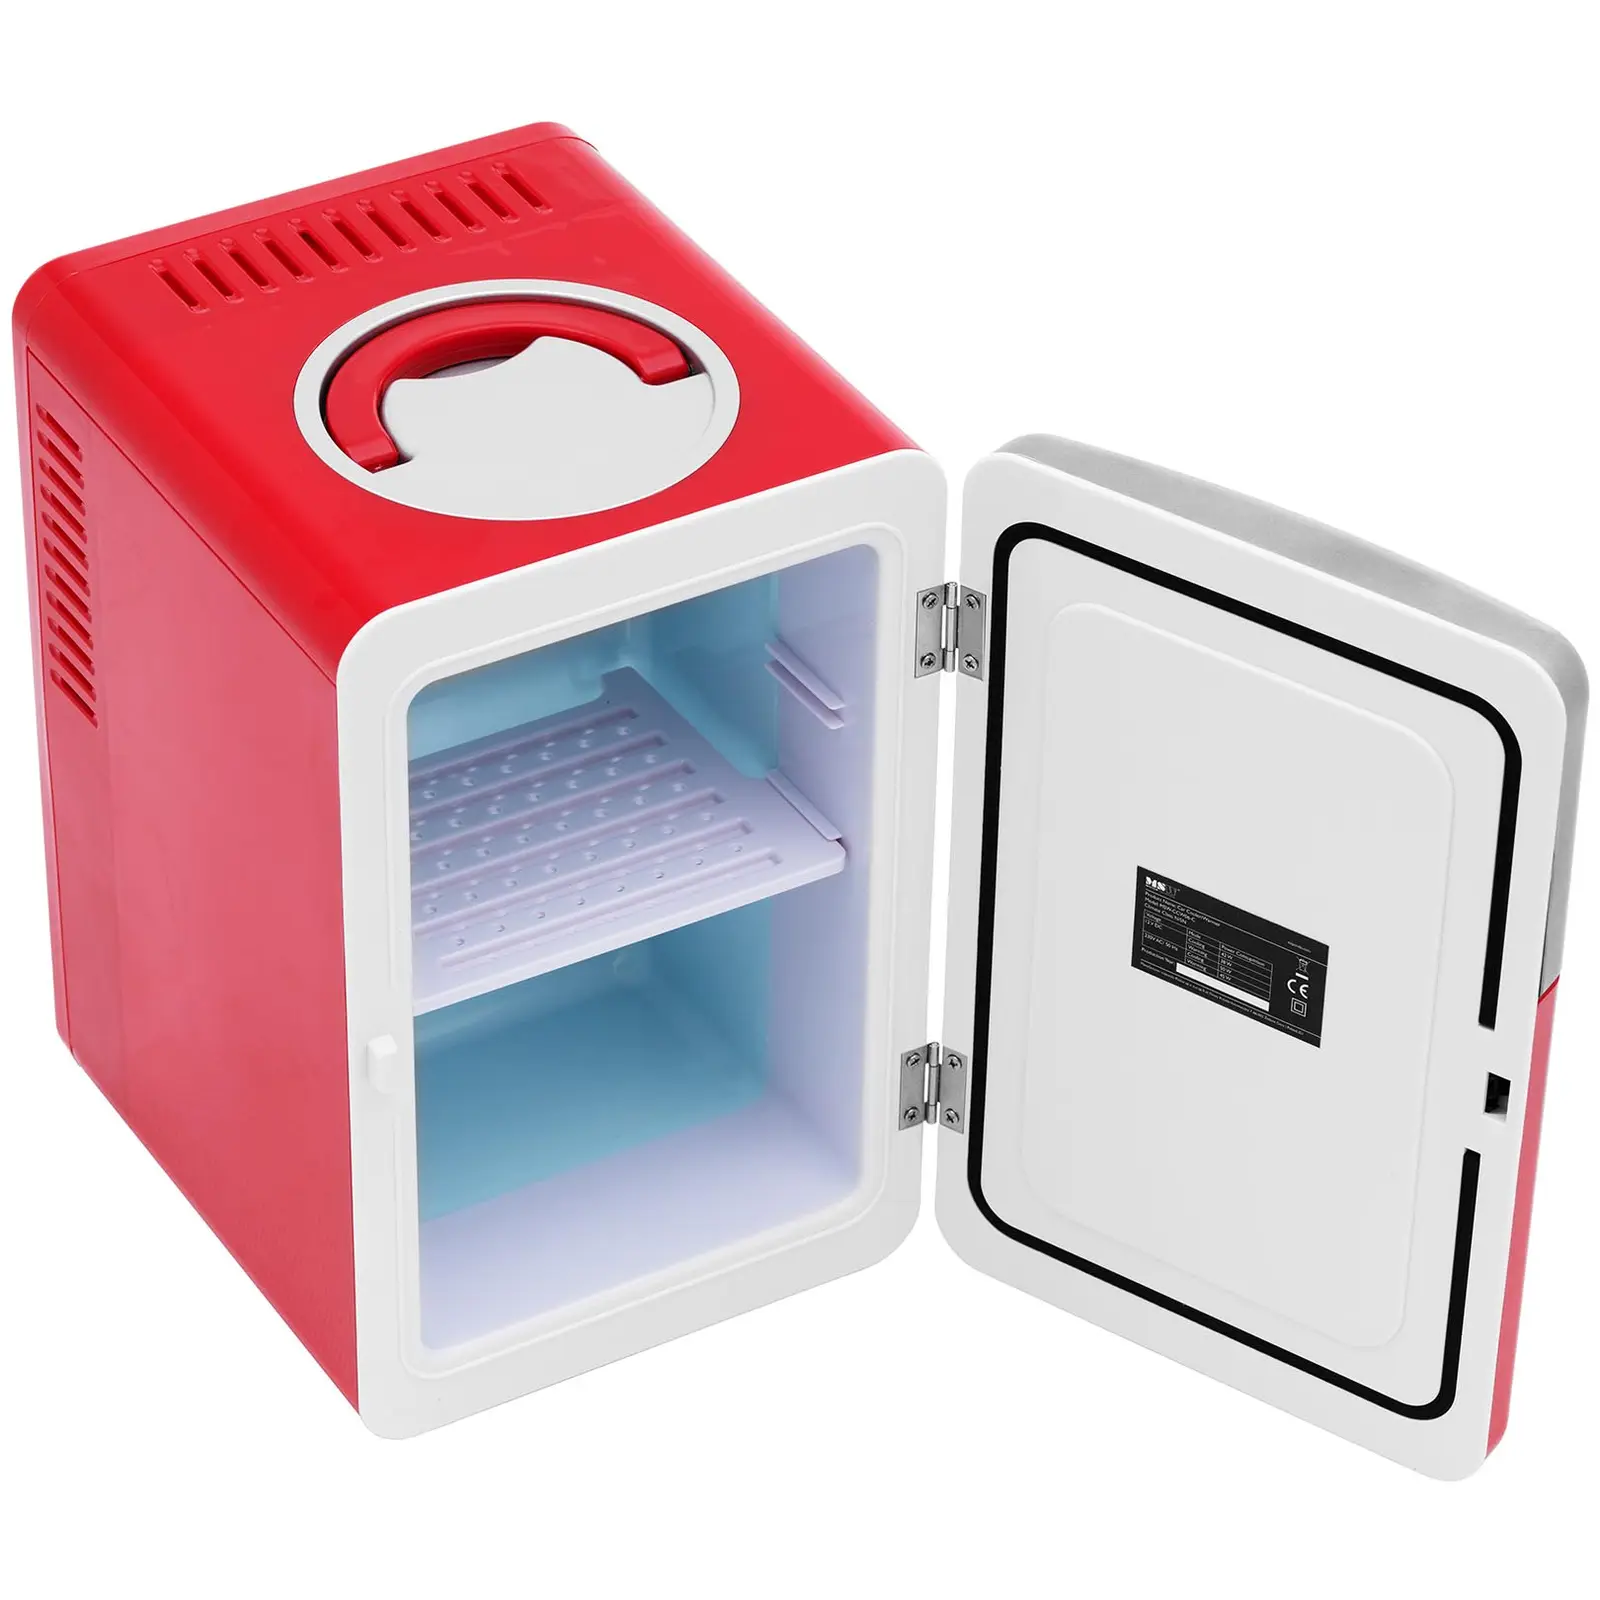 Mini refrigerador 12 V / 230 V - aparato 2 en 1 con función de mantenimiento de calor - 6 L - rojo/plateado